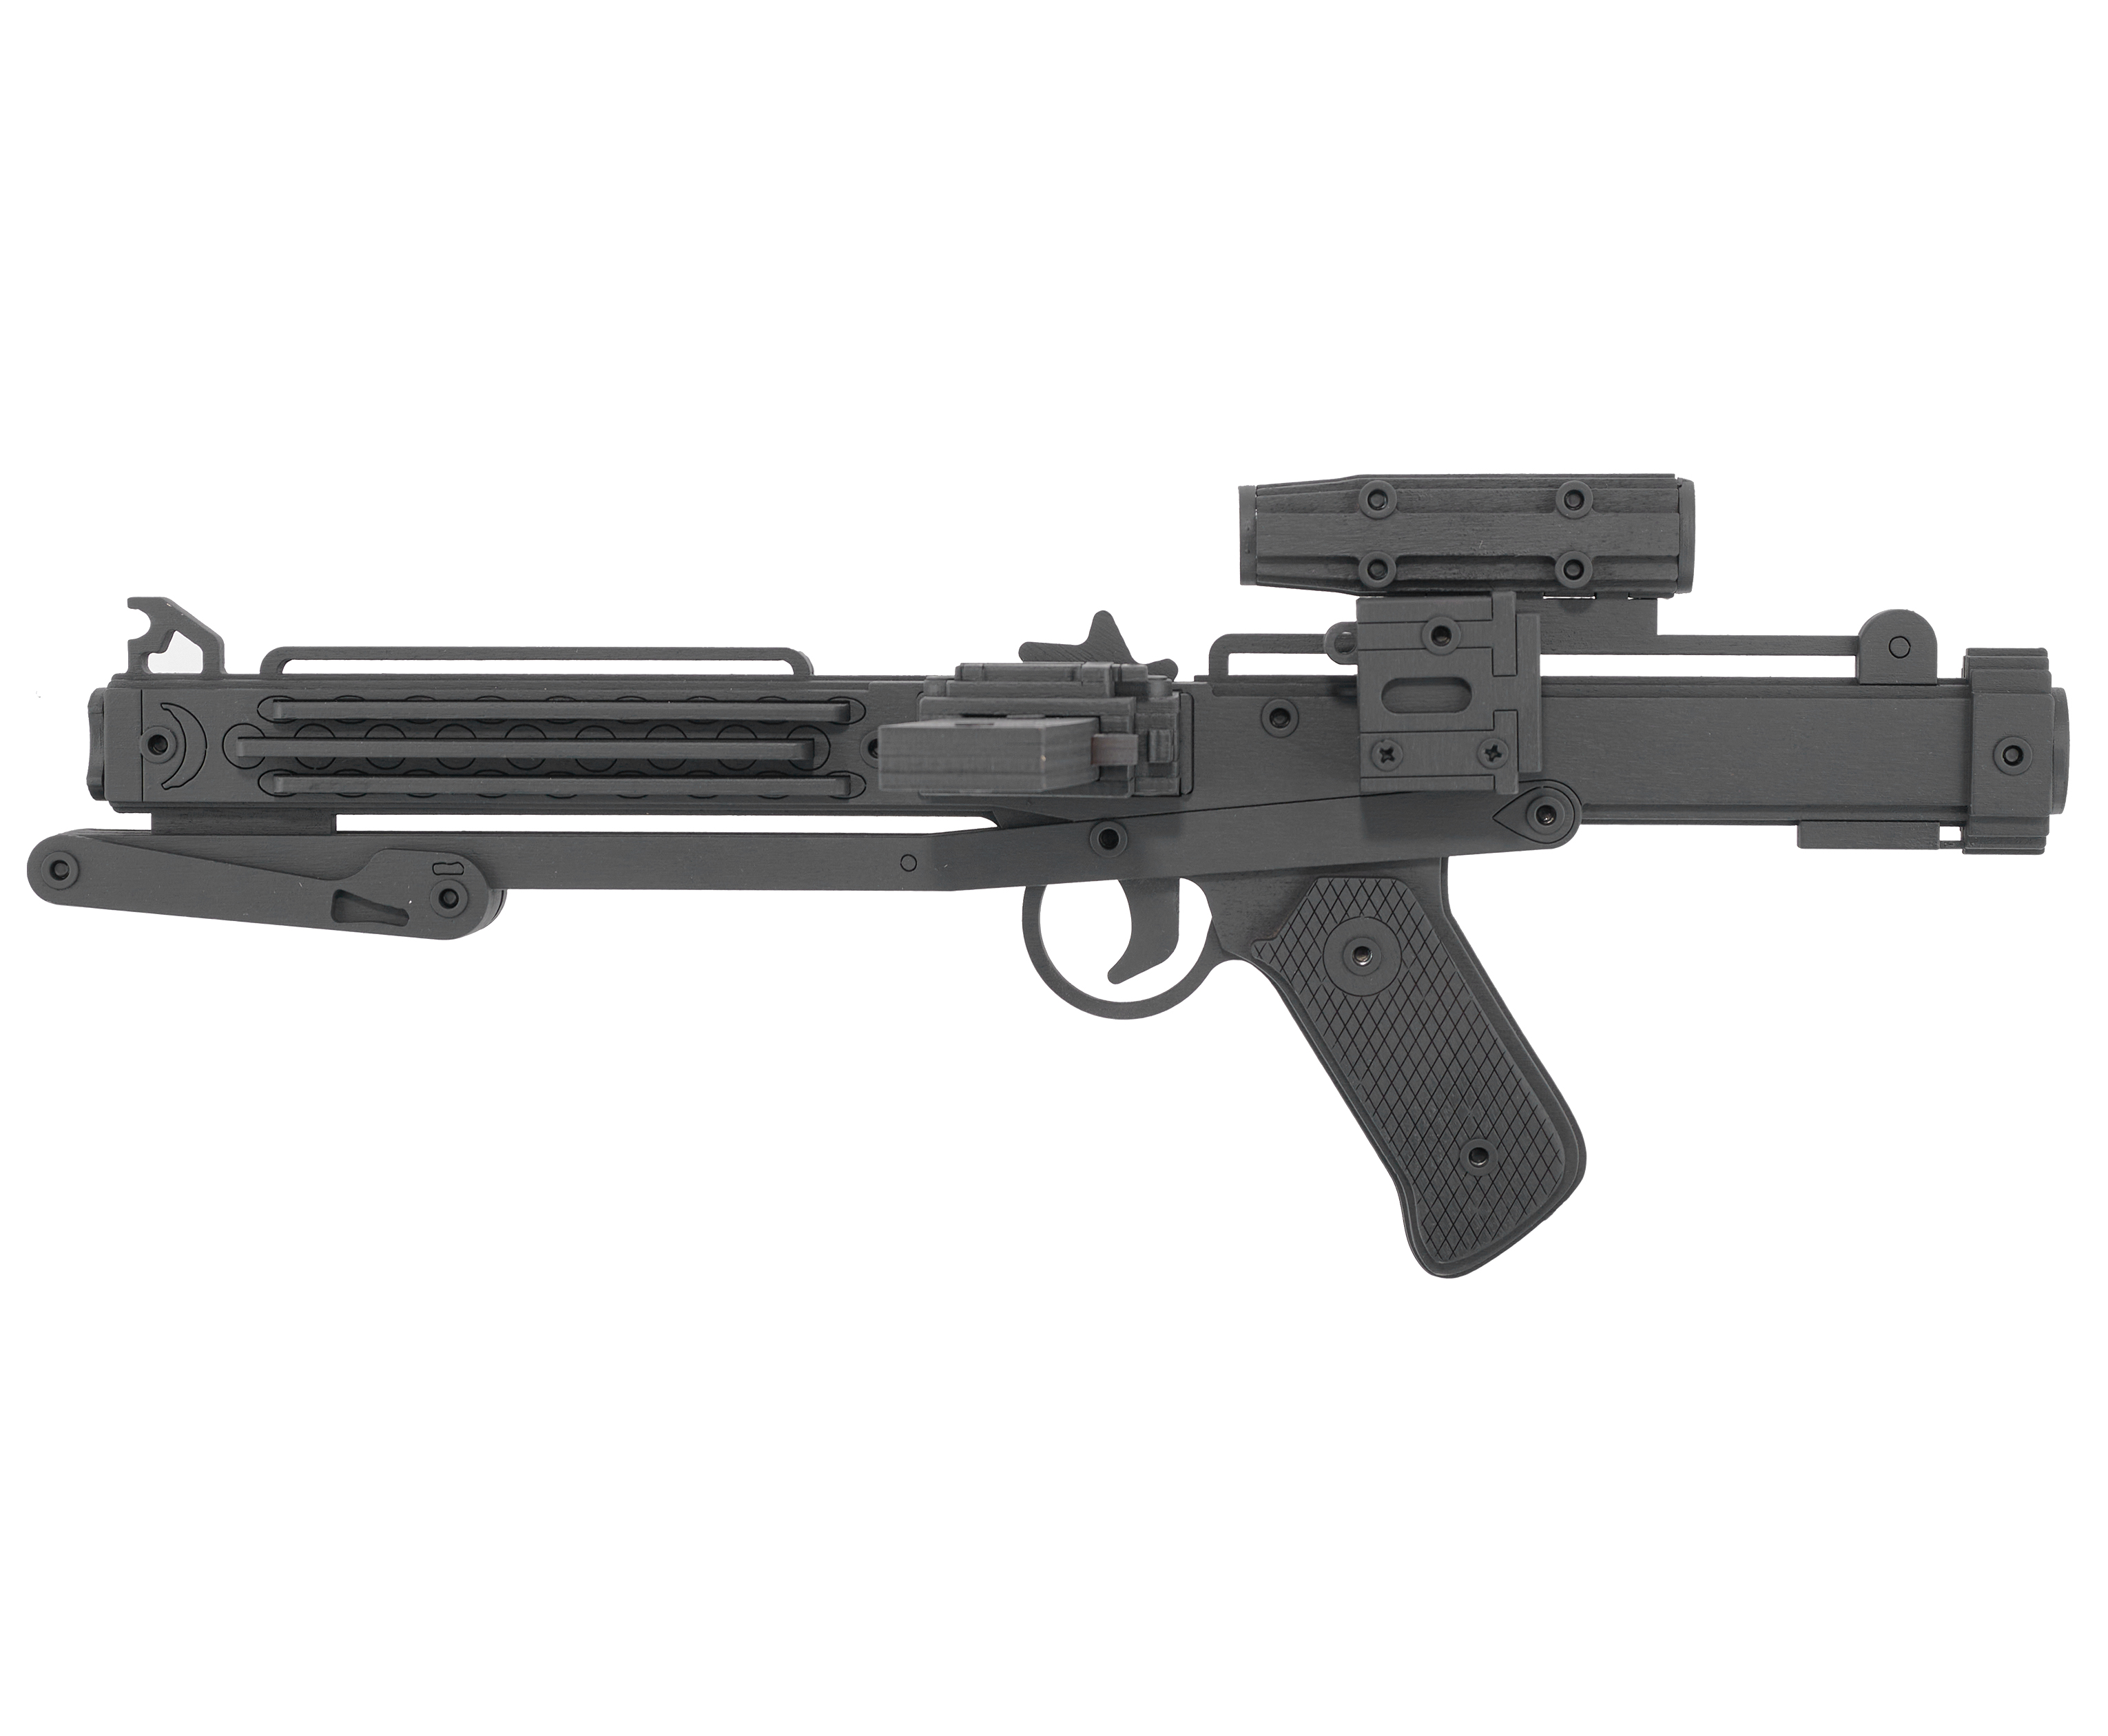 Резинкострел игрушечный Arma toys лазерная винтовка E-11 макет, Star Wars, AT011 резинкострел arma toys пулемет рпк макет калашников at037